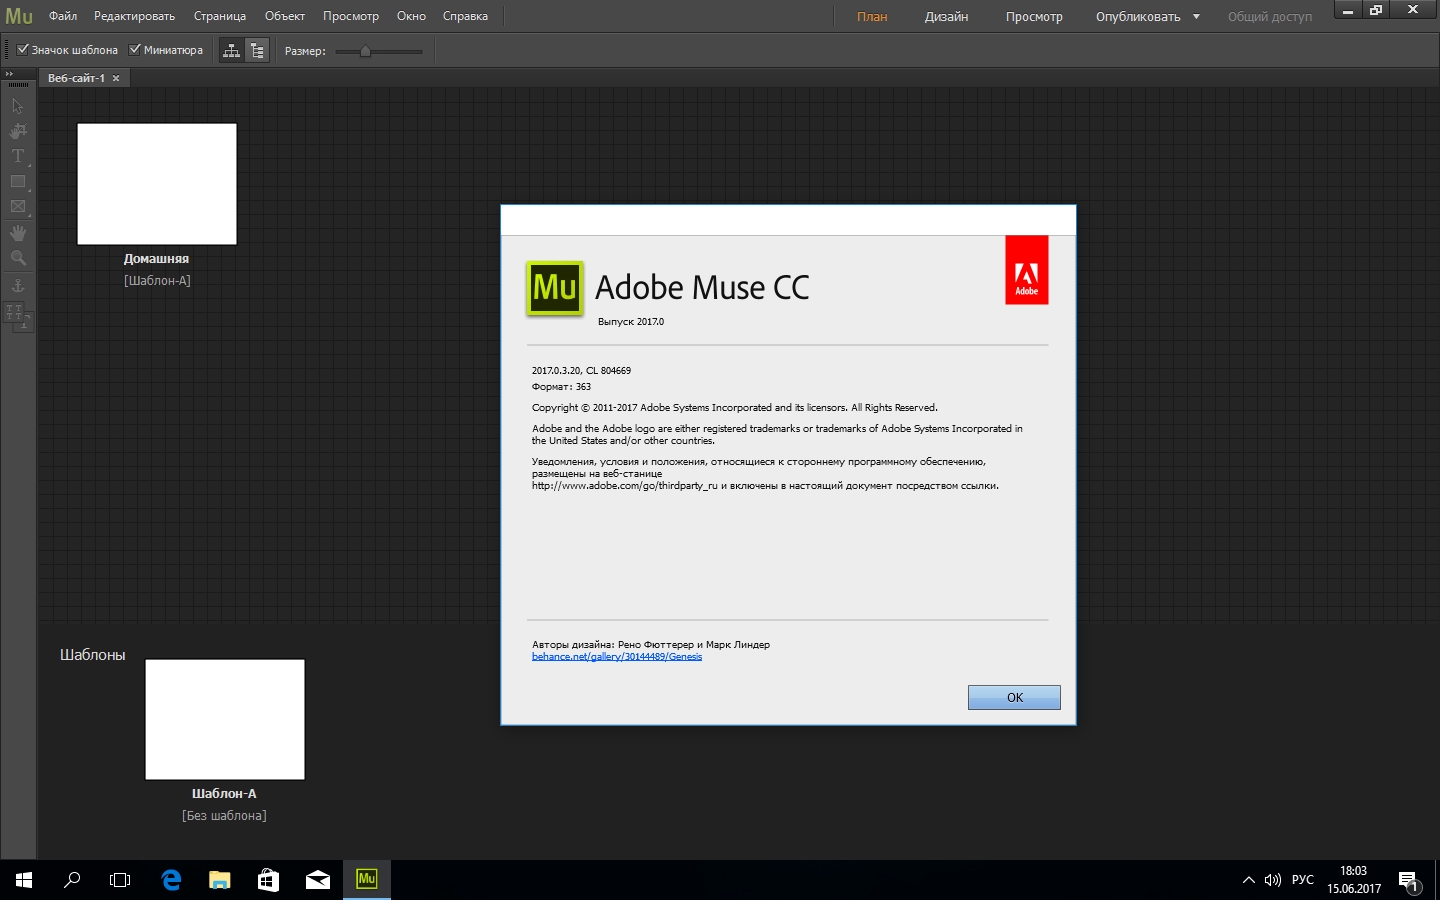 Сайт adobe com. Формат сайта Adobe Muse. Adobe Muse.